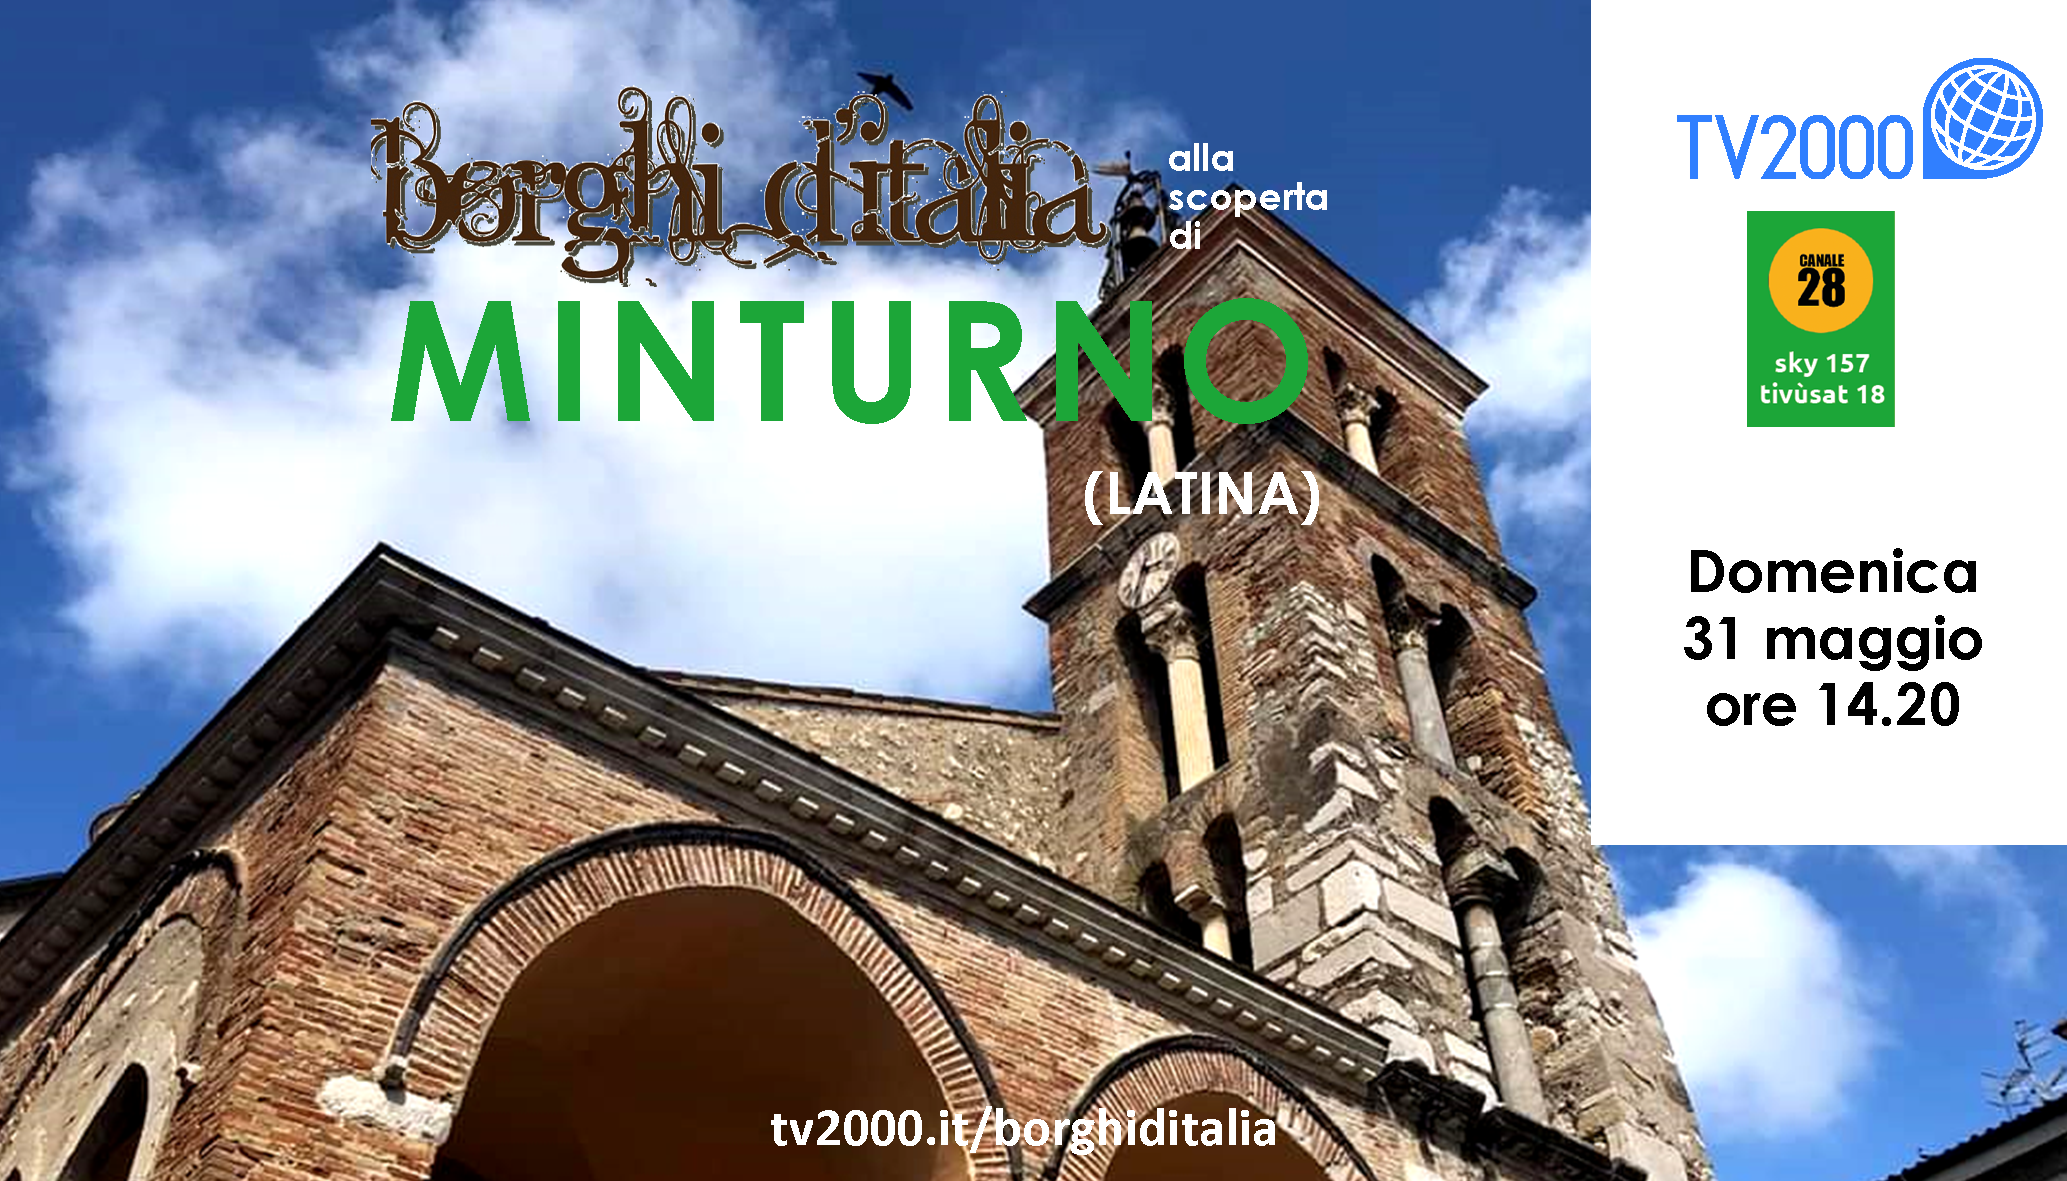 Borghi d’Italia - alla scoperta di Minturno